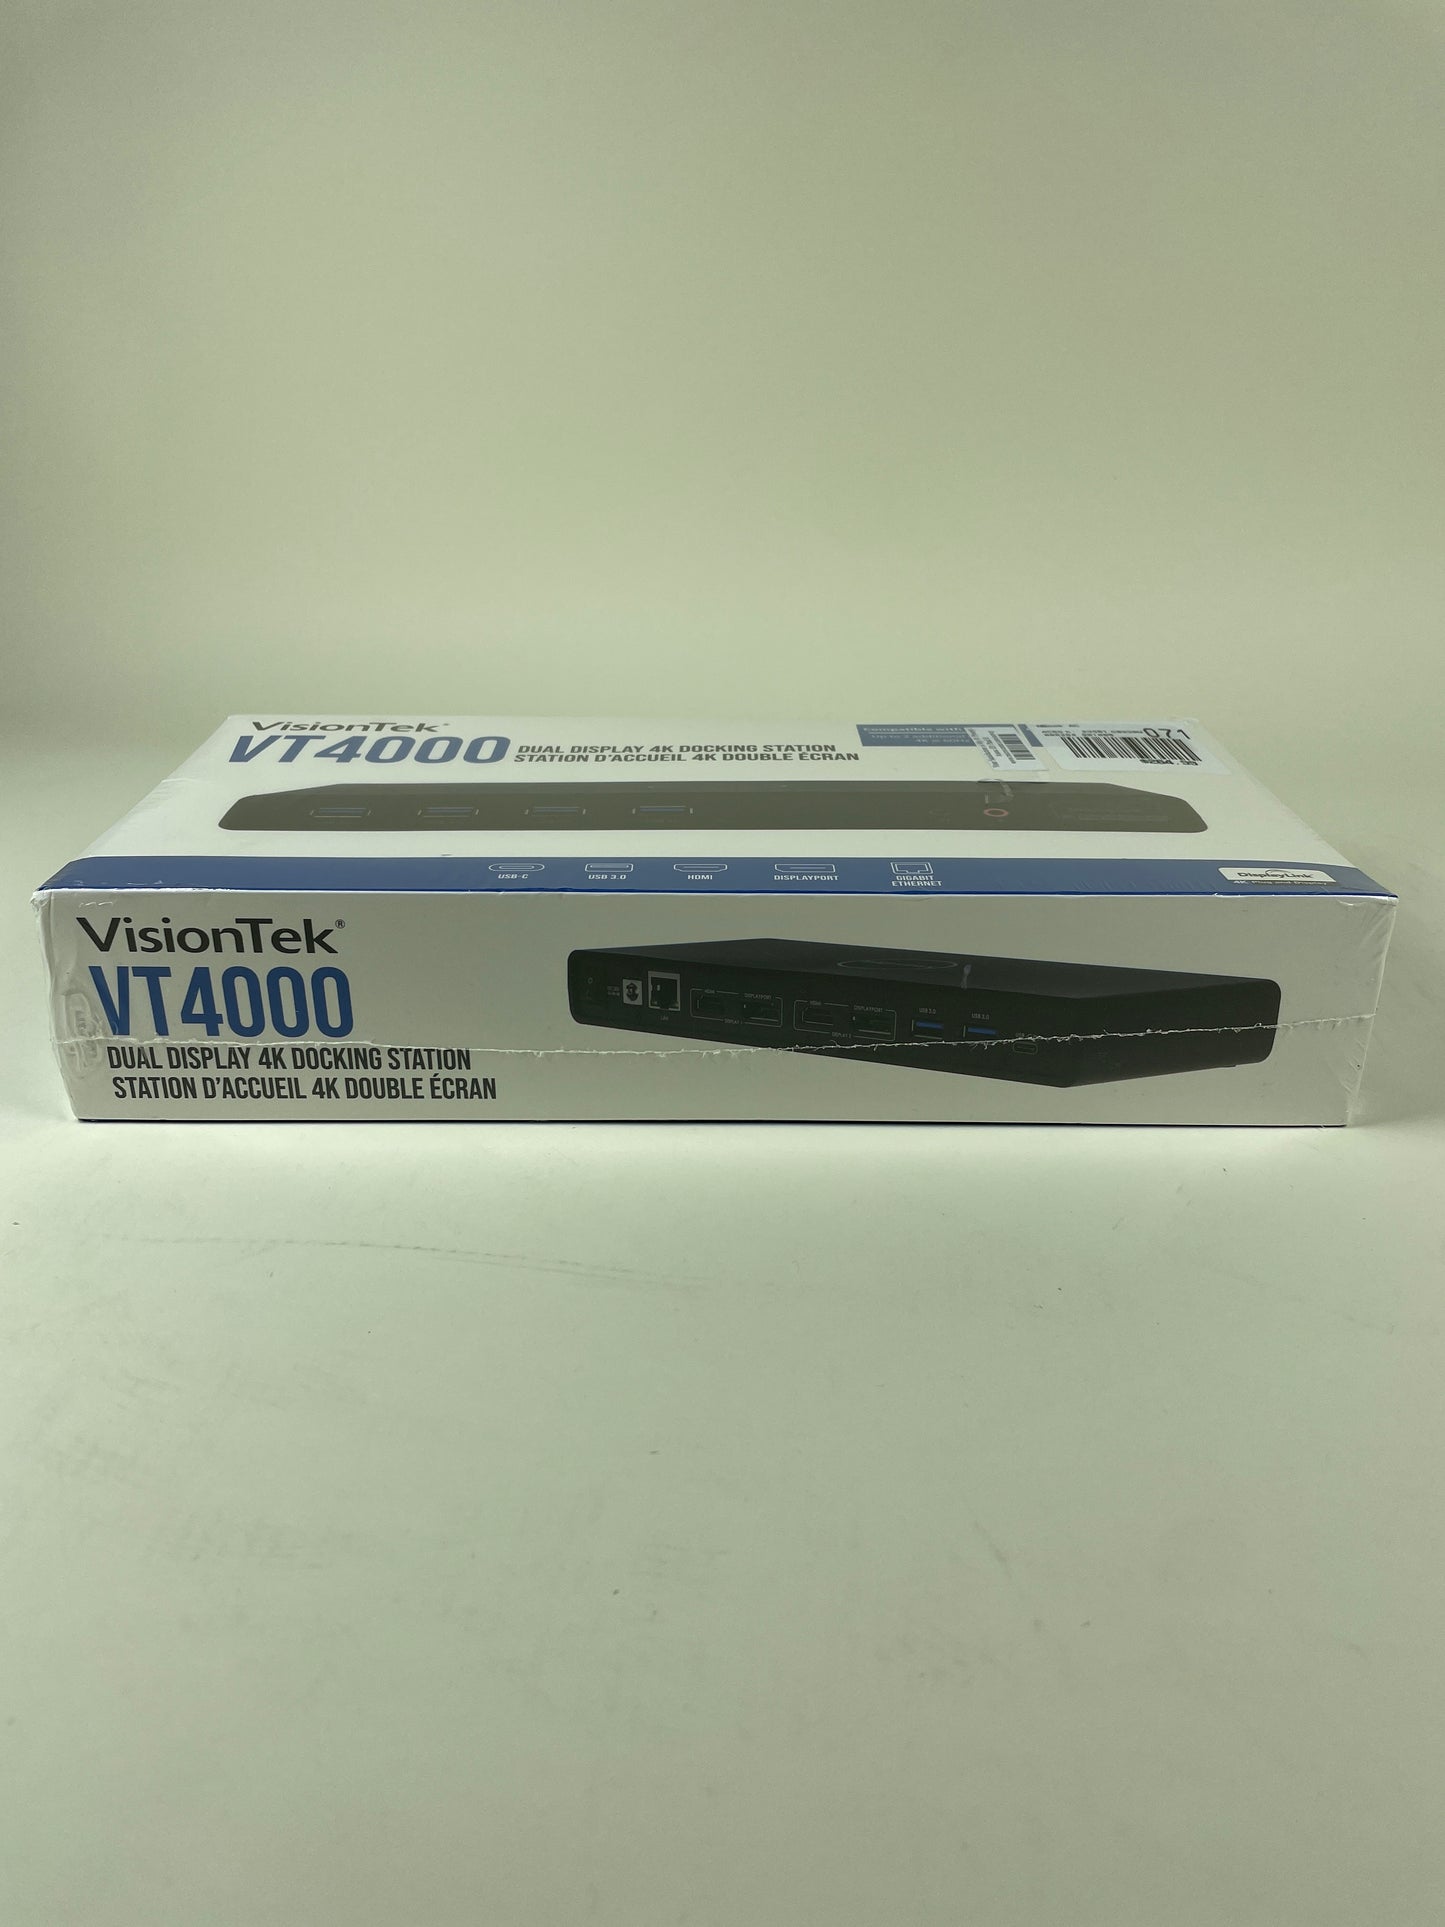 New VisionTek VT4000 Dual Display 4k Docking Station